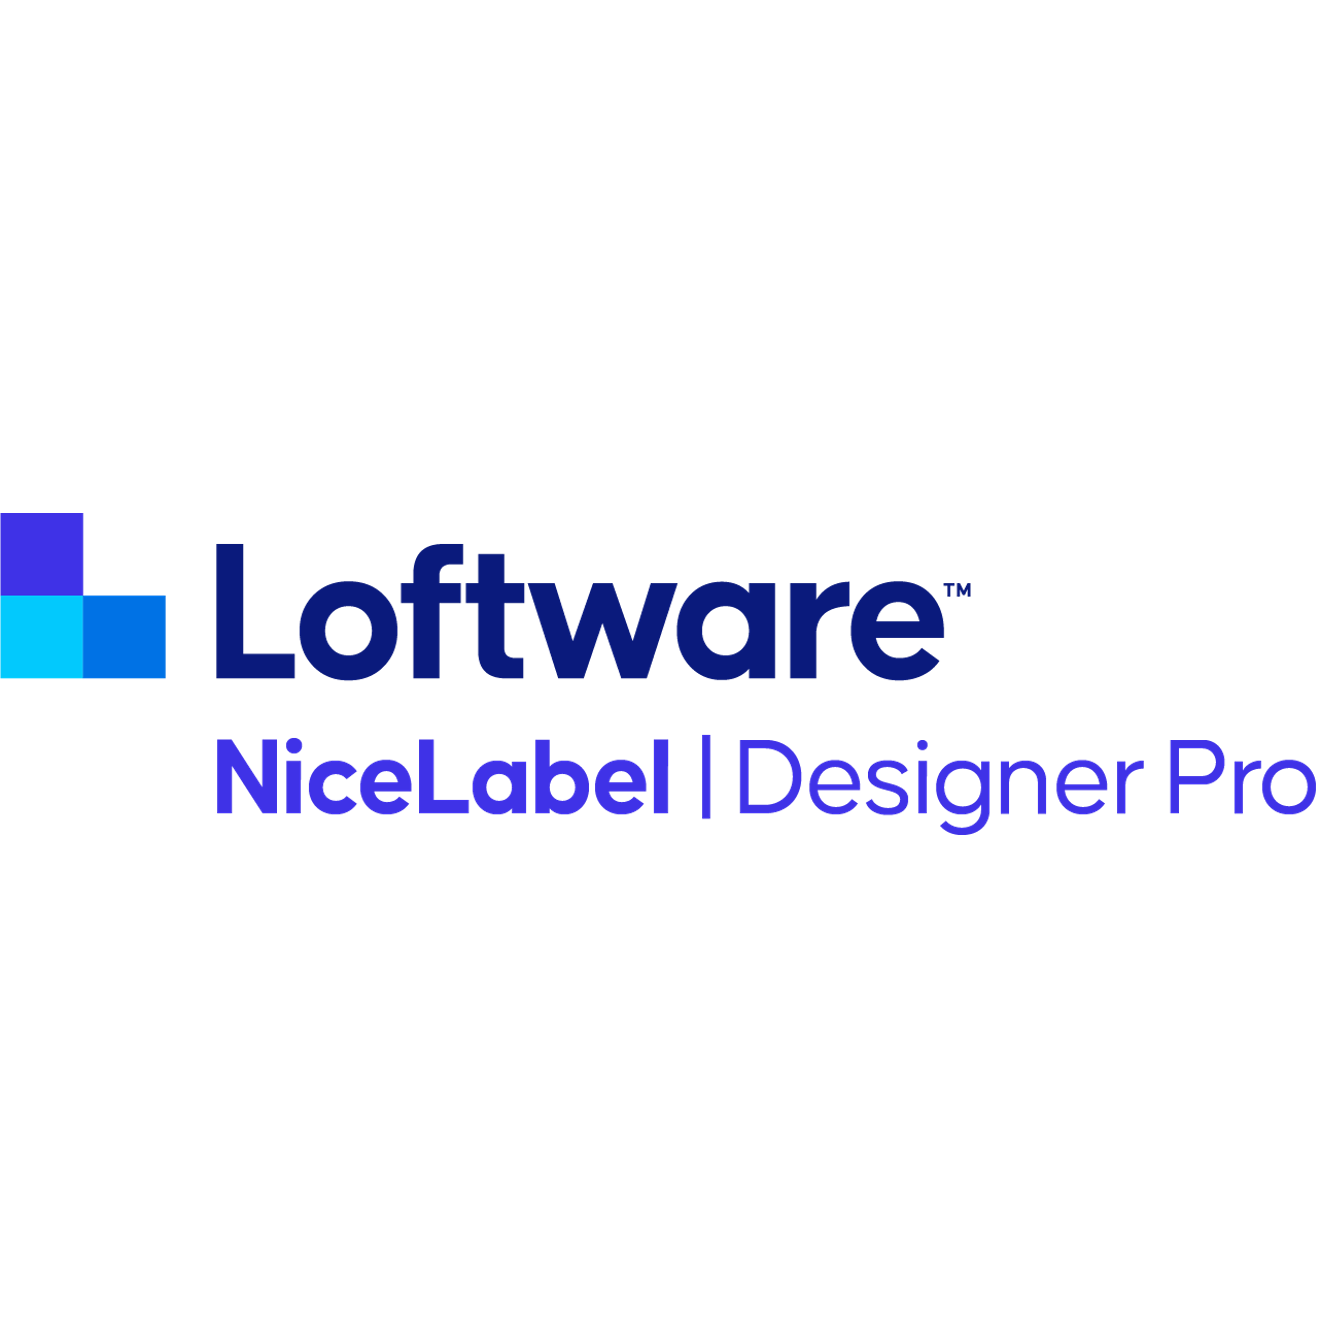 nicelabel 2019 designer pro